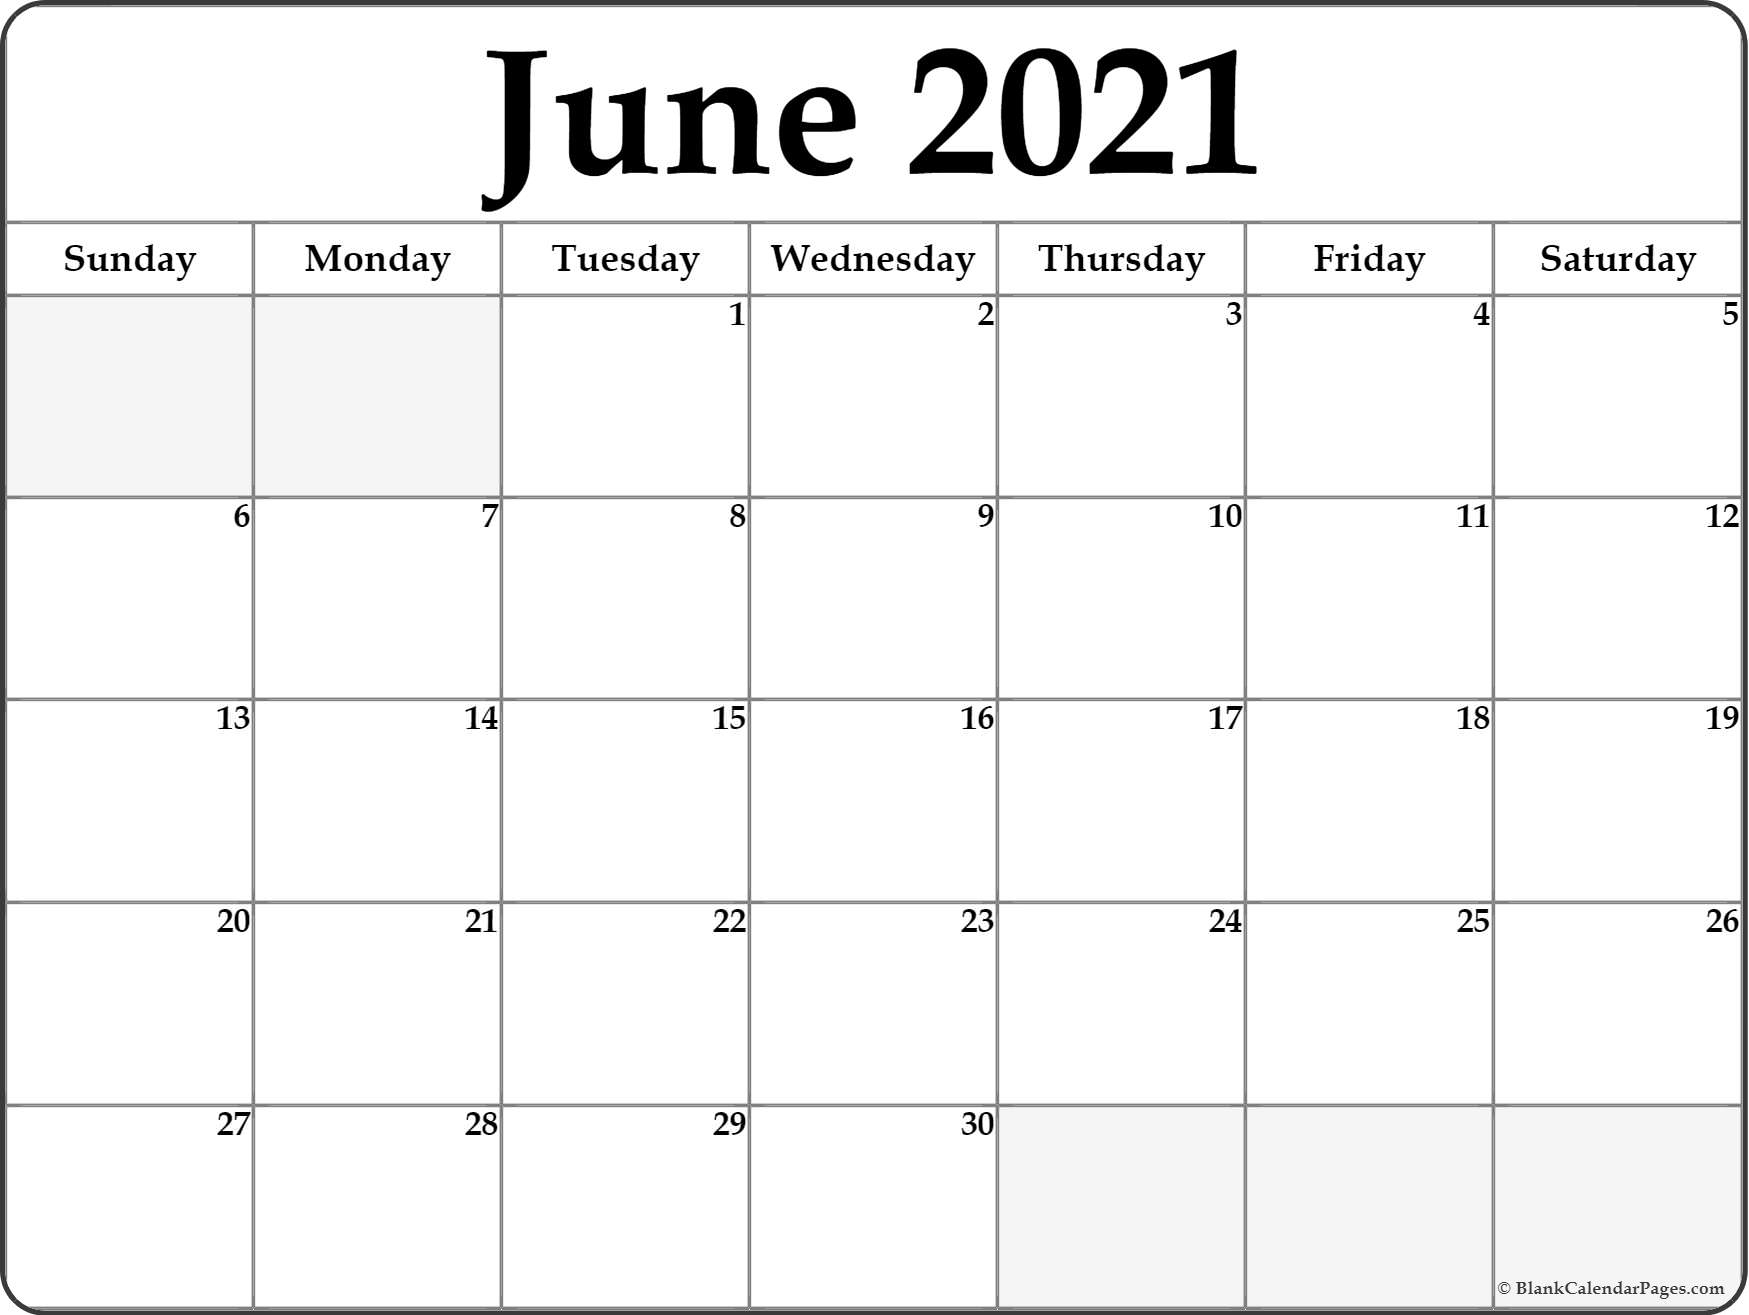 Get Calendar Weekly June 2021 Printable